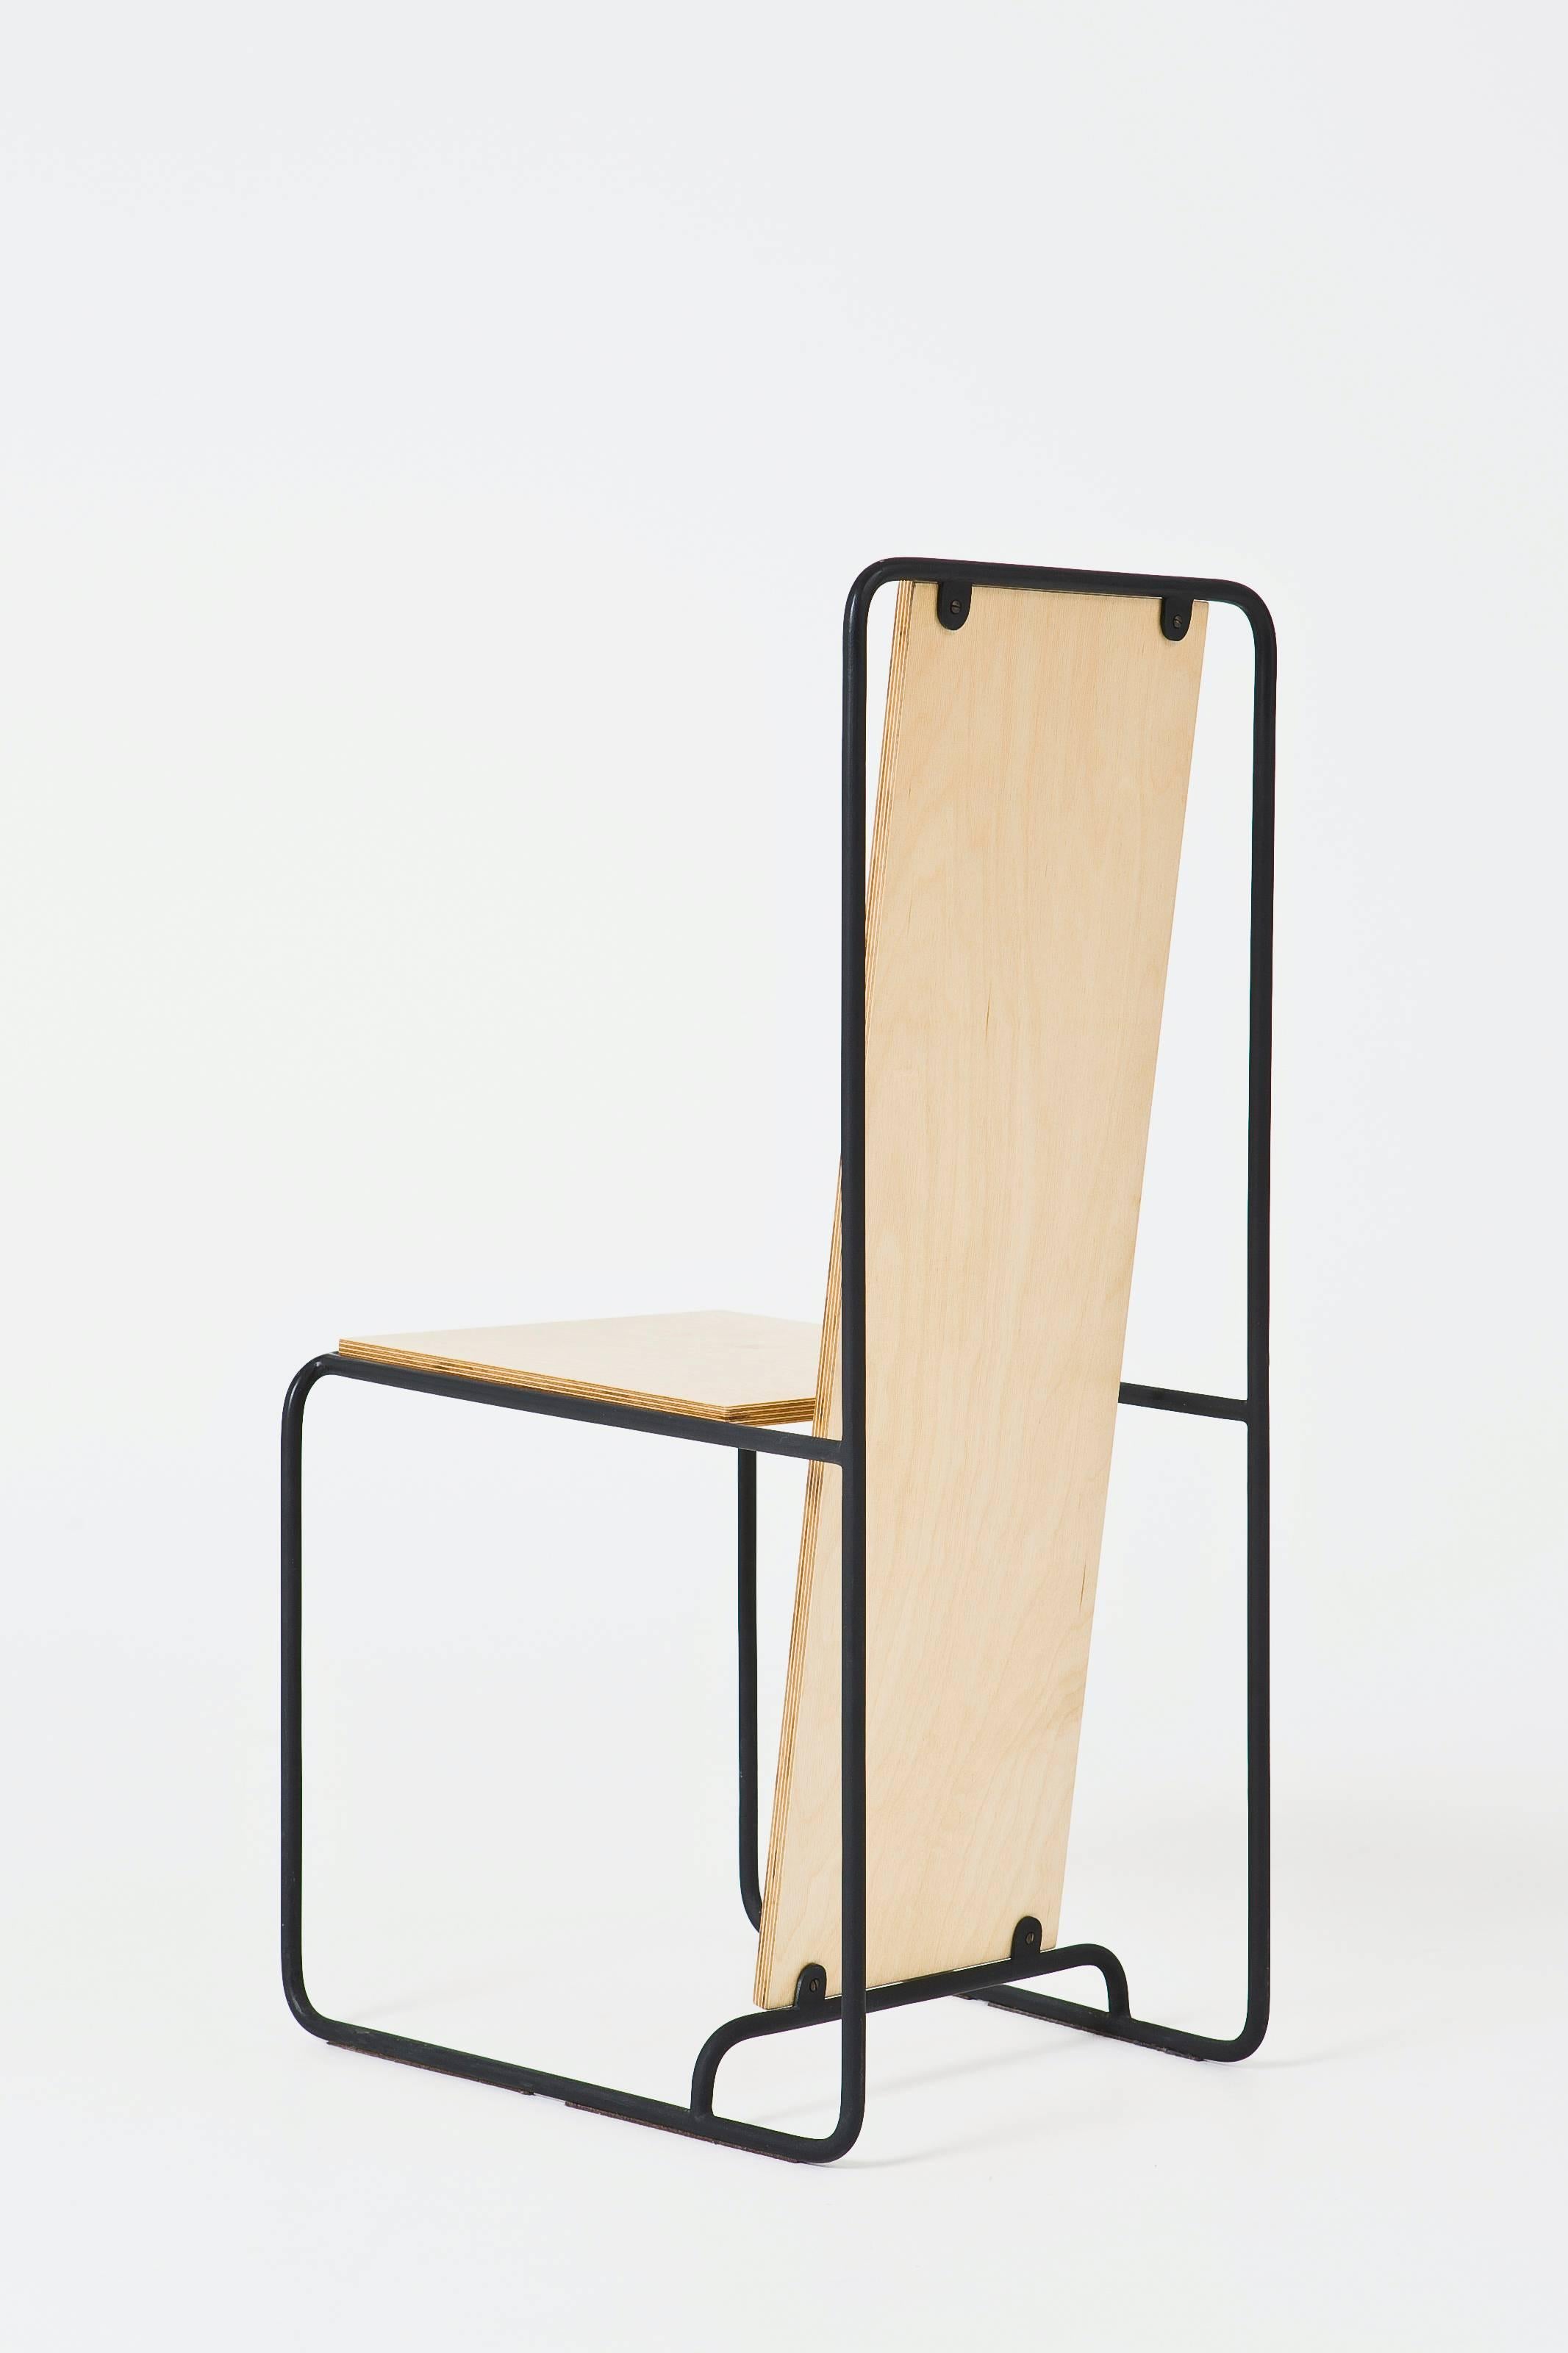 De Stijl Line Chair 'Oak veneer and Metal structure' - Gerrit Rietveld inspiration